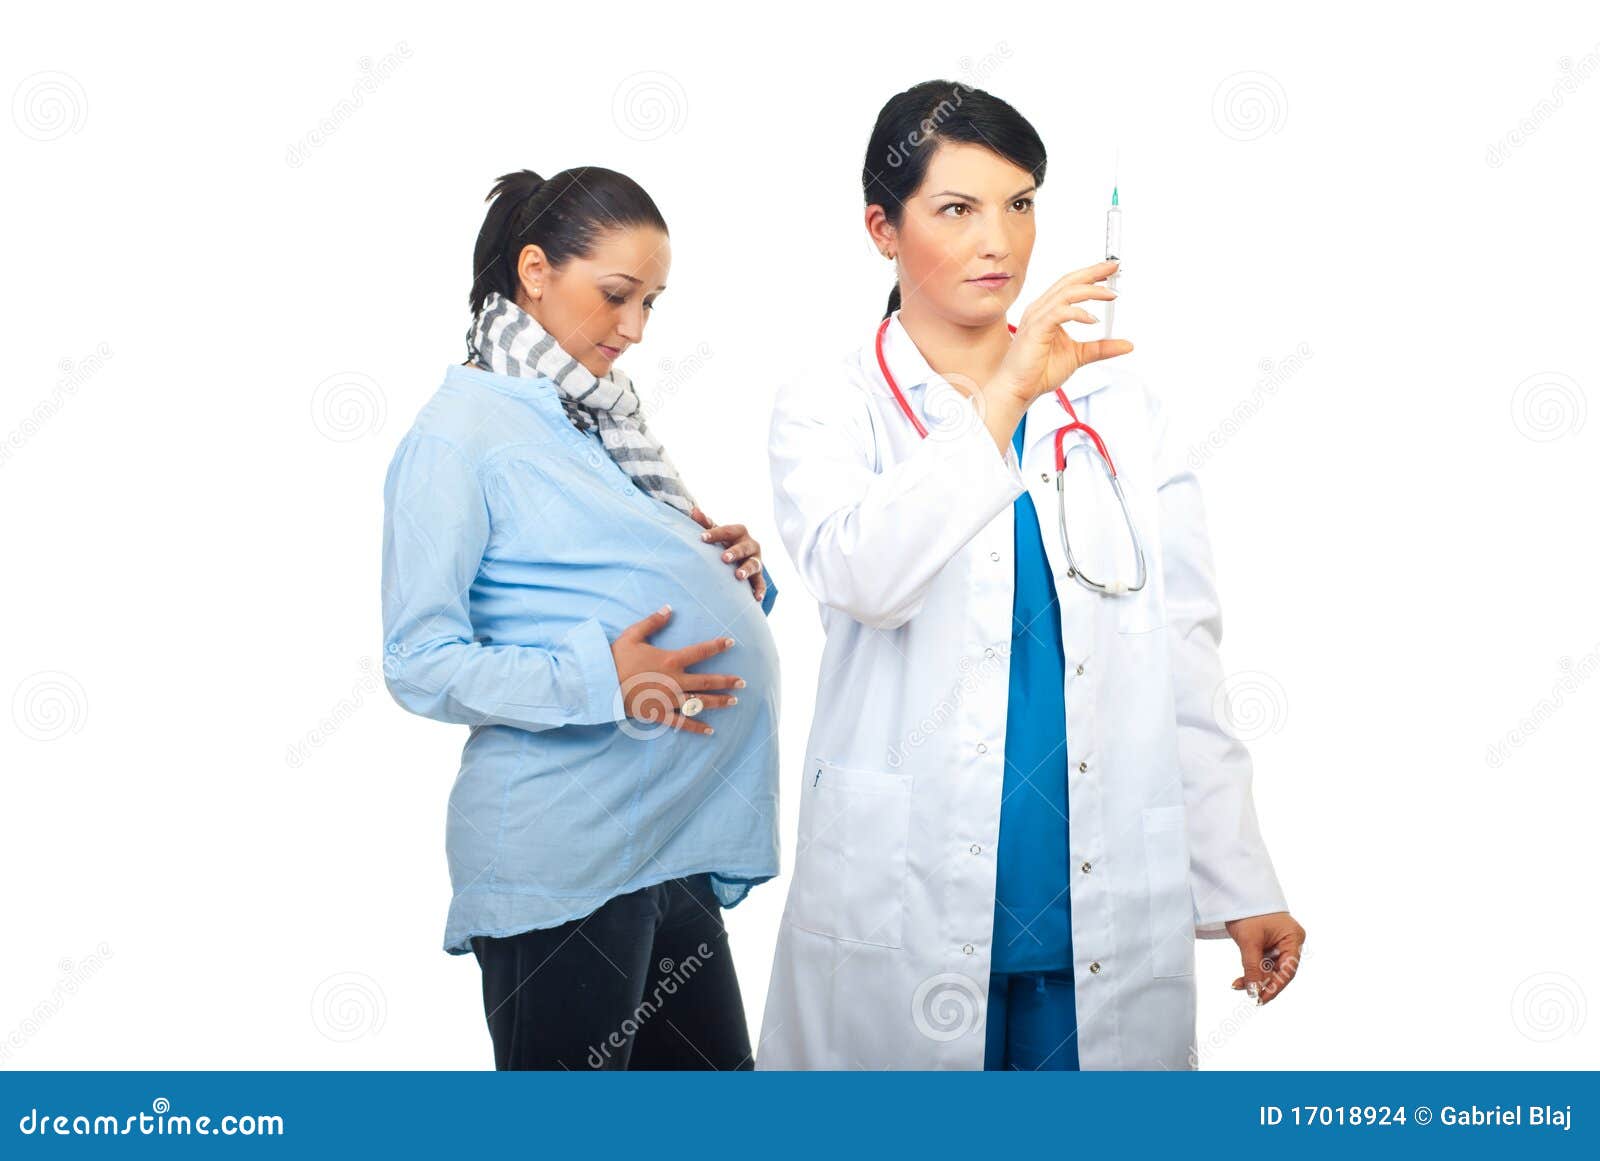 doctor prepare vaccine for pregnant